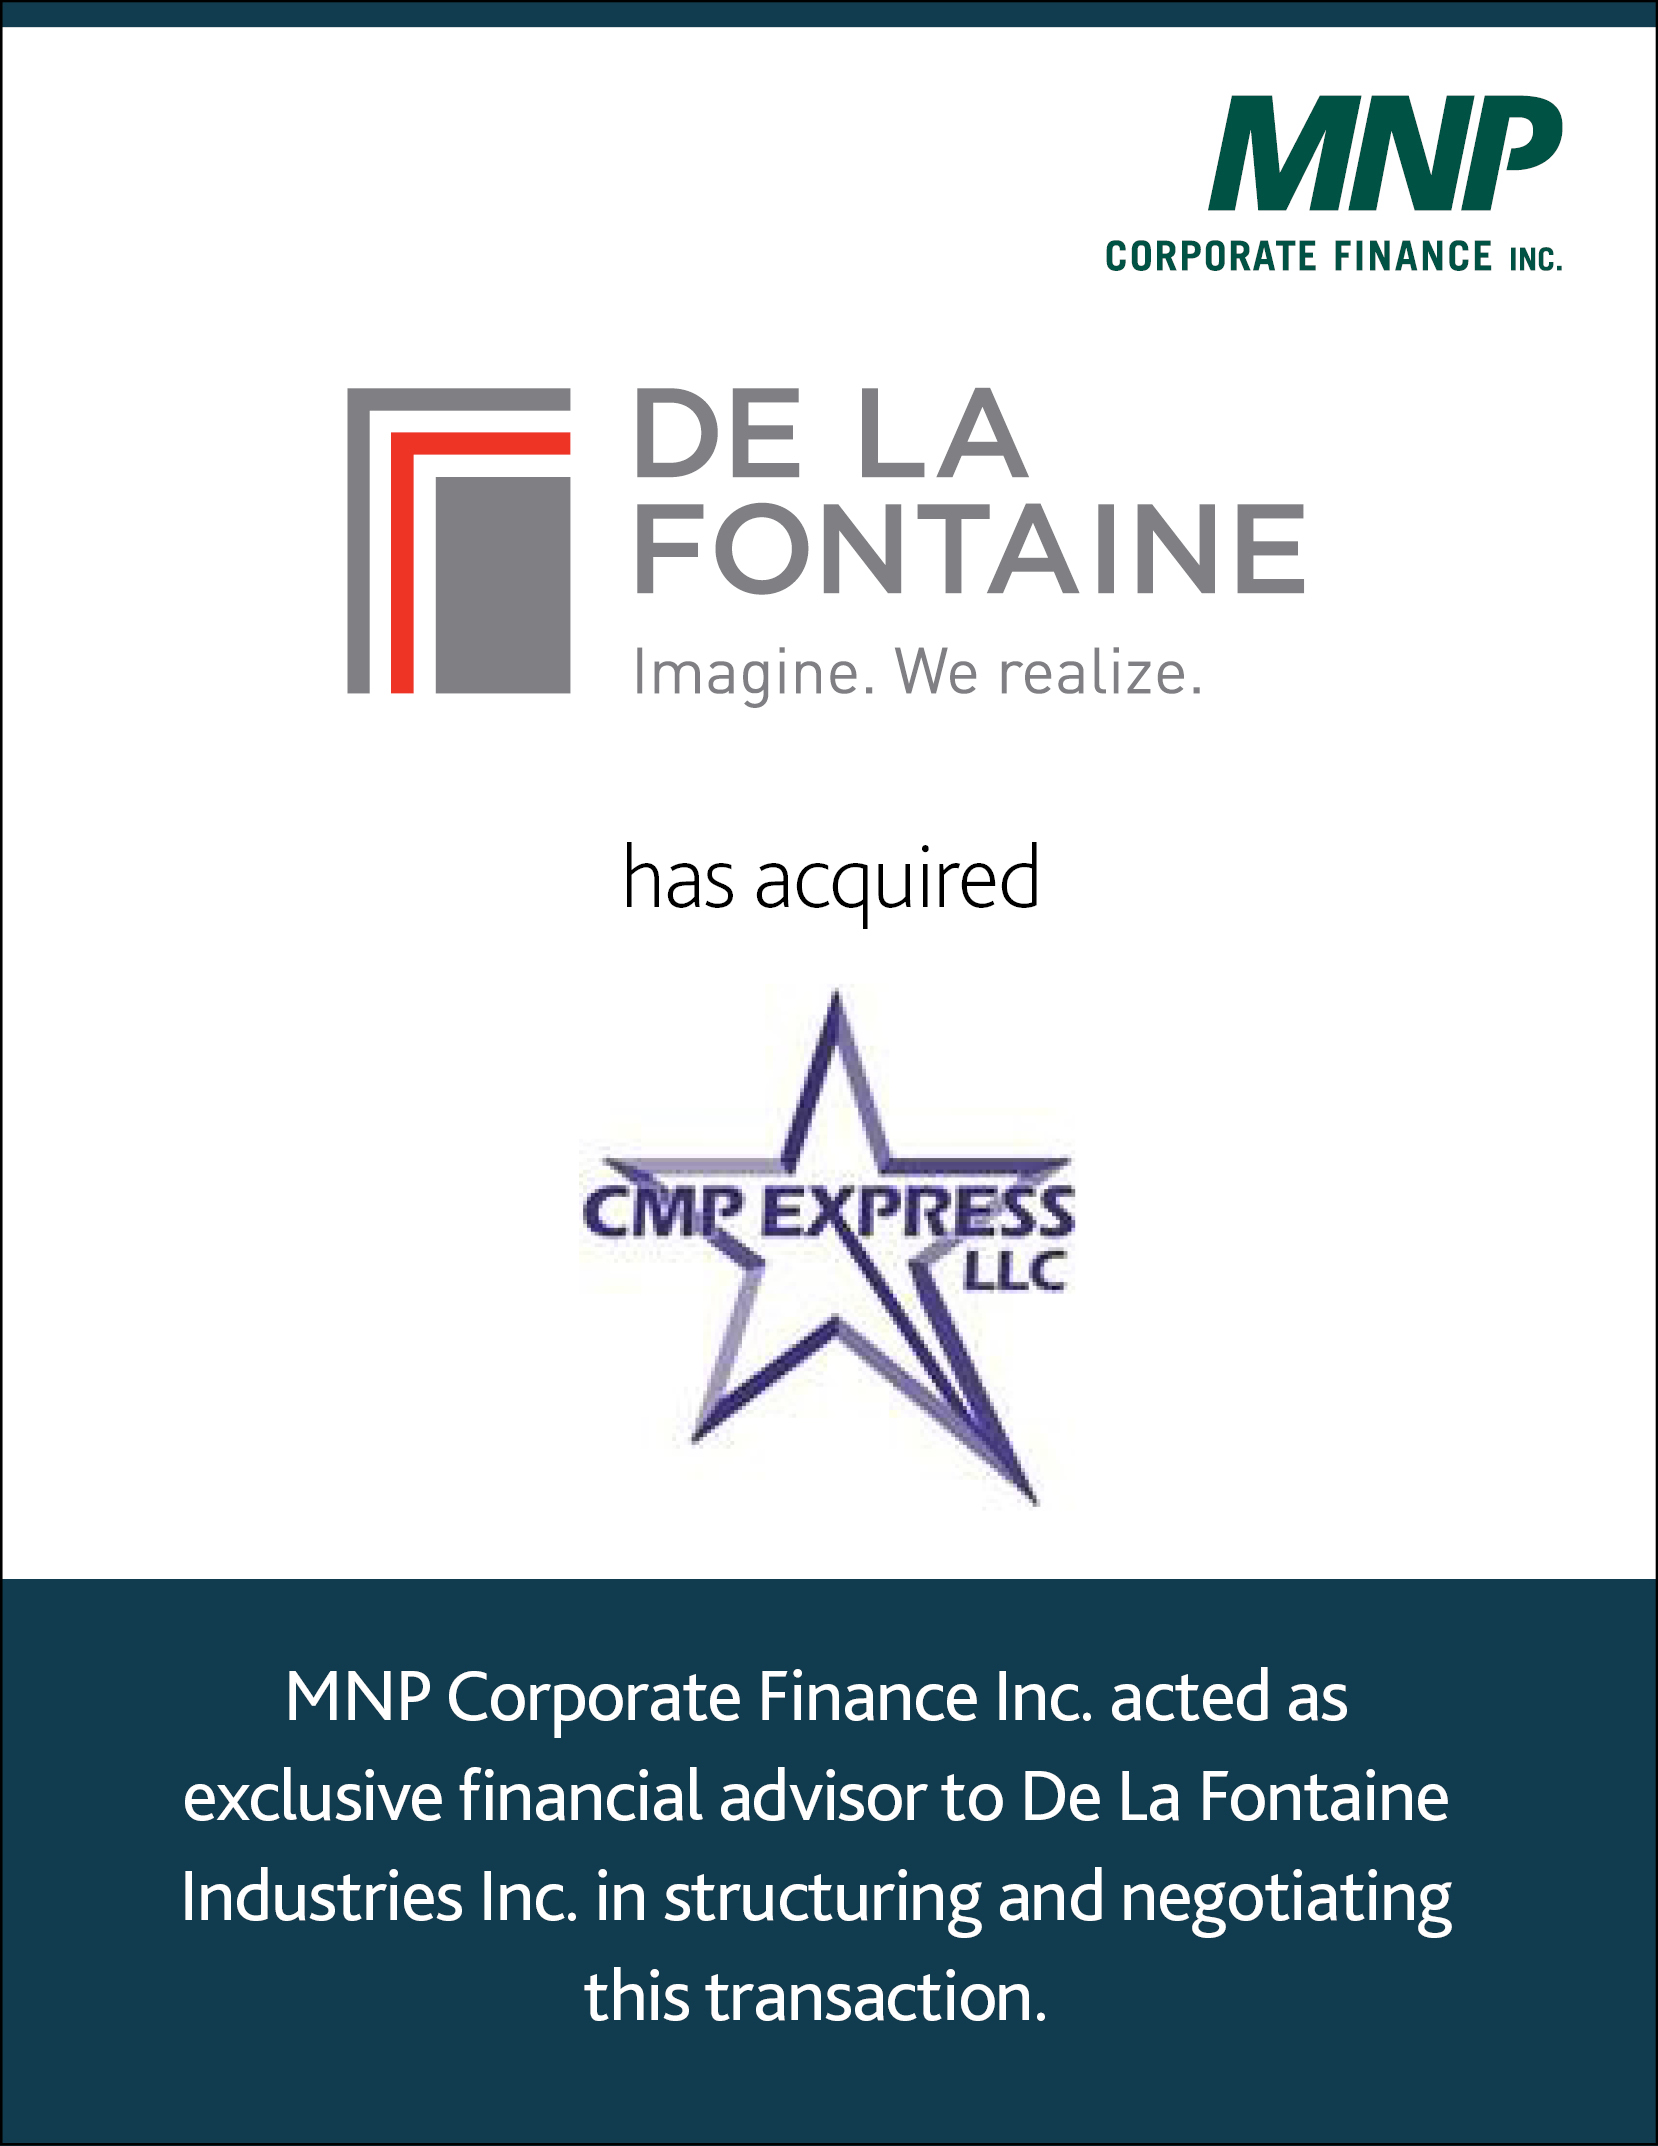 De La Fontaine has acquired CMP Express LLC